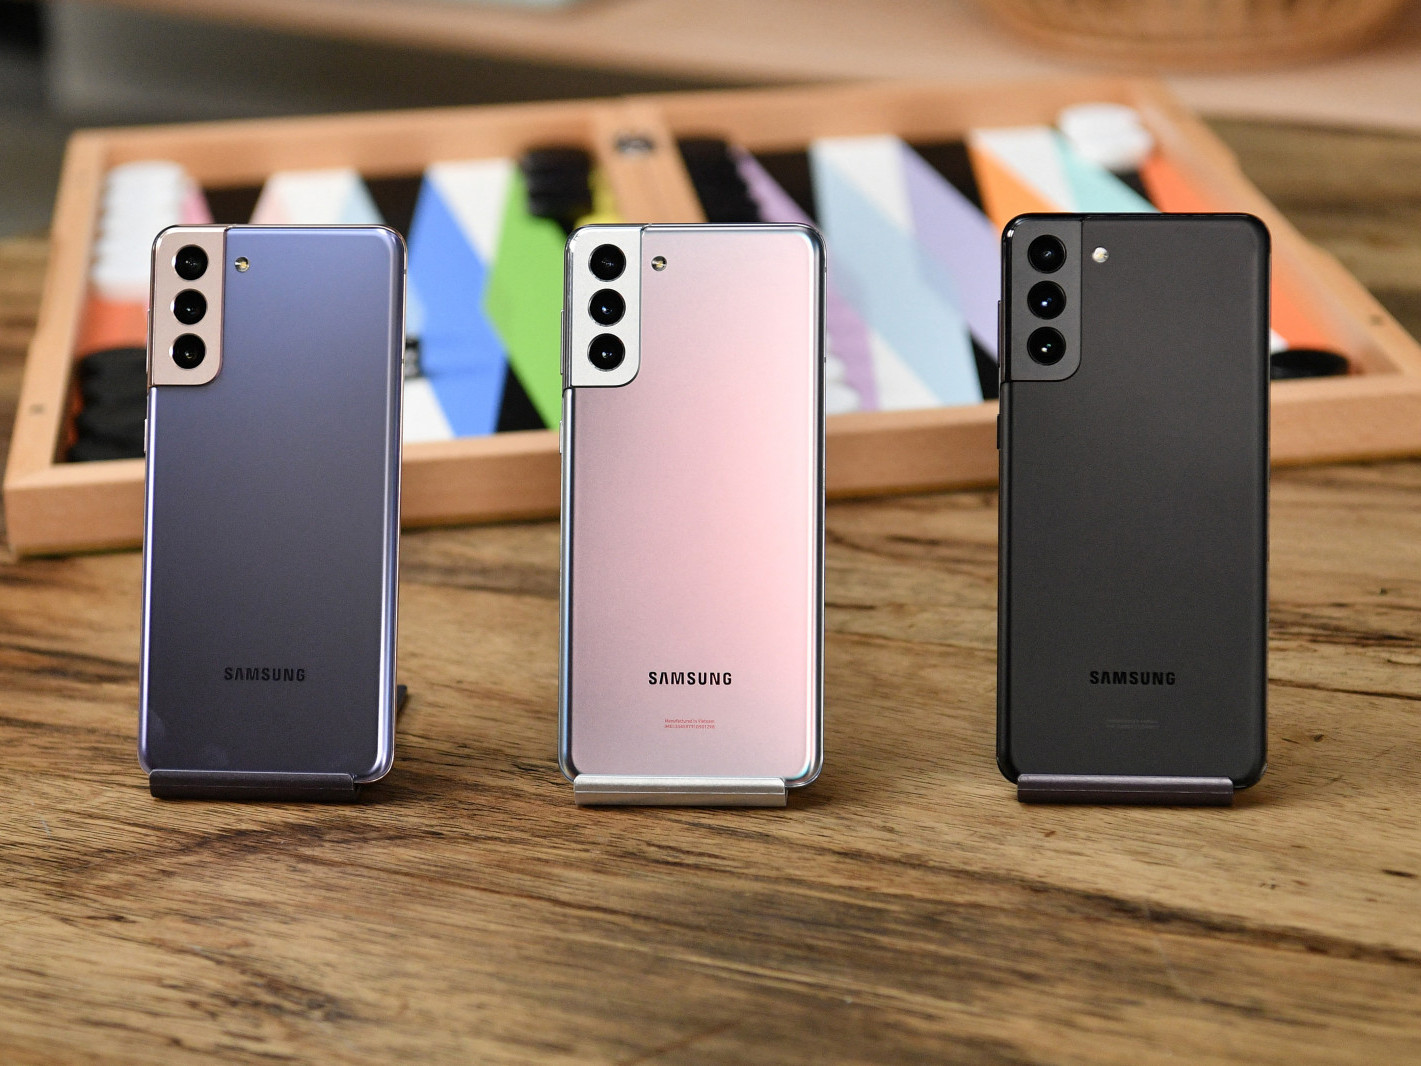 ВИДЕО: Samsung” компани цоо шинэ “5G Android” гар утаснуудаа танилцууллаа